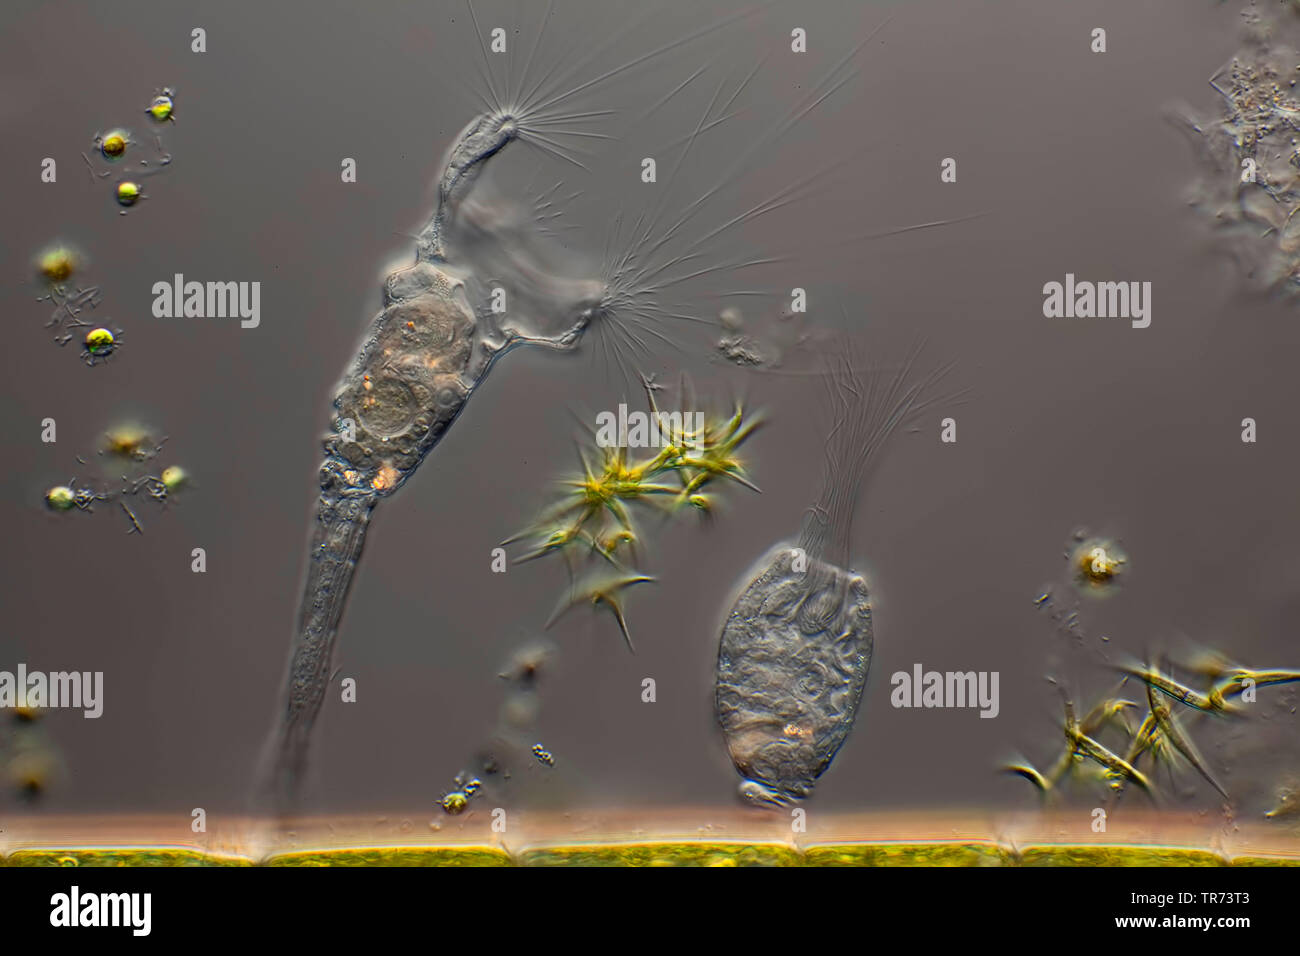 Les rotifères (Collotheca spec.), sur des algues filamenteuses, microscopie en contraste d'interférence différentielle, x 80, Allemagne Banque D'Images